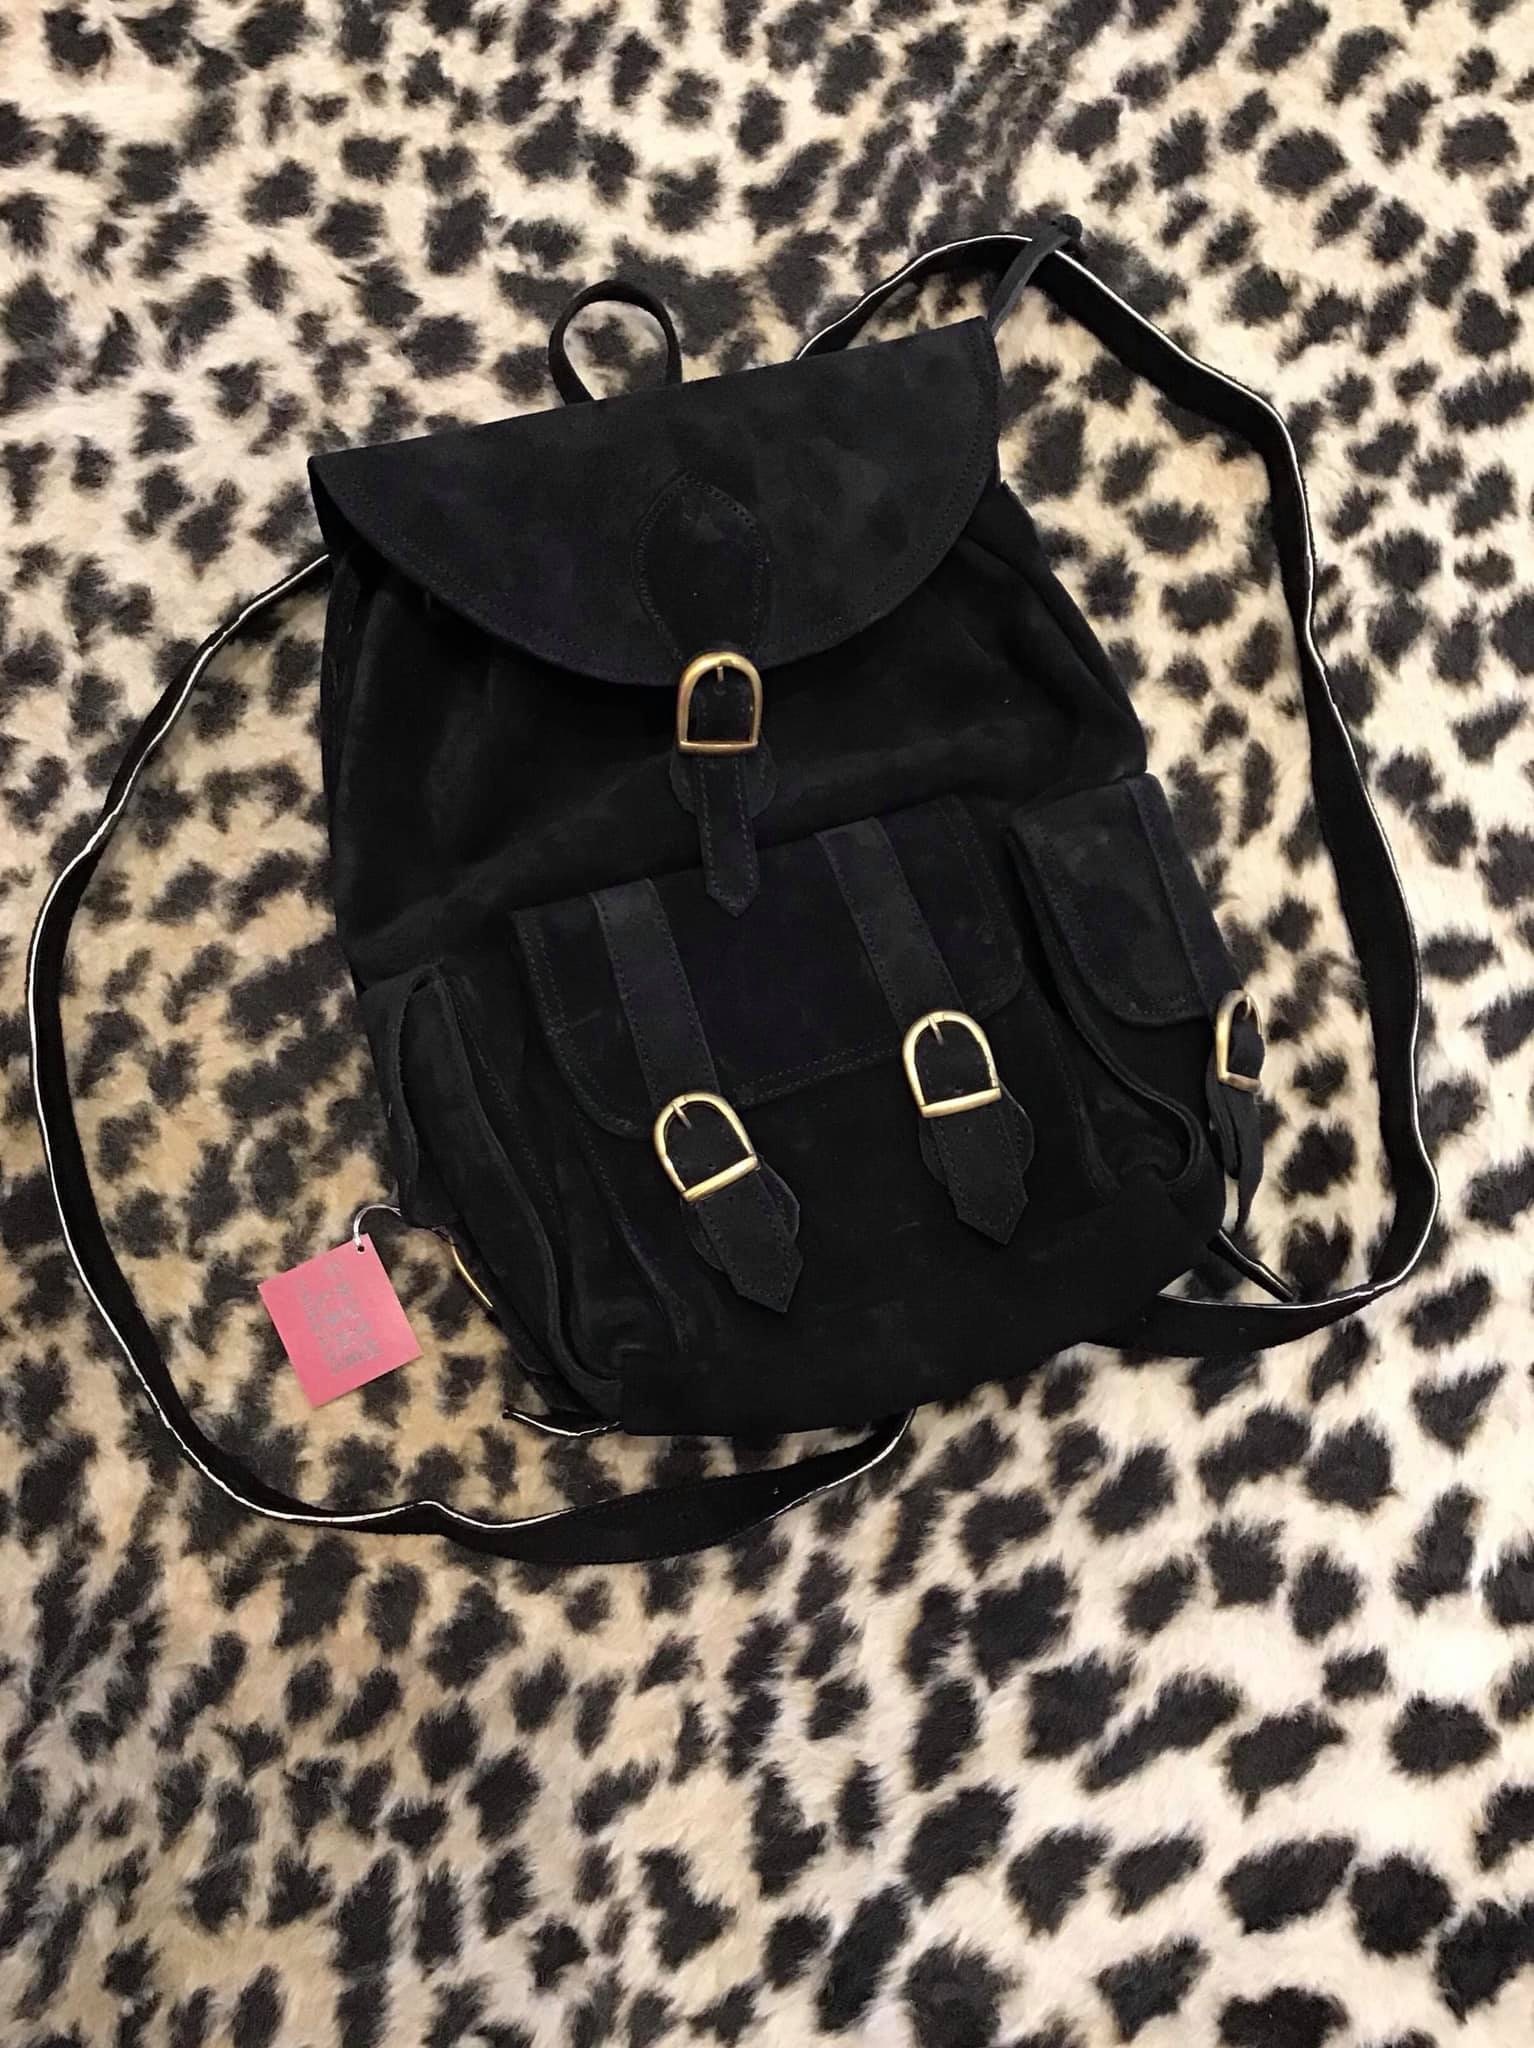 Black Genuine Suede Backpack/bookbag With Pockets - Etsy